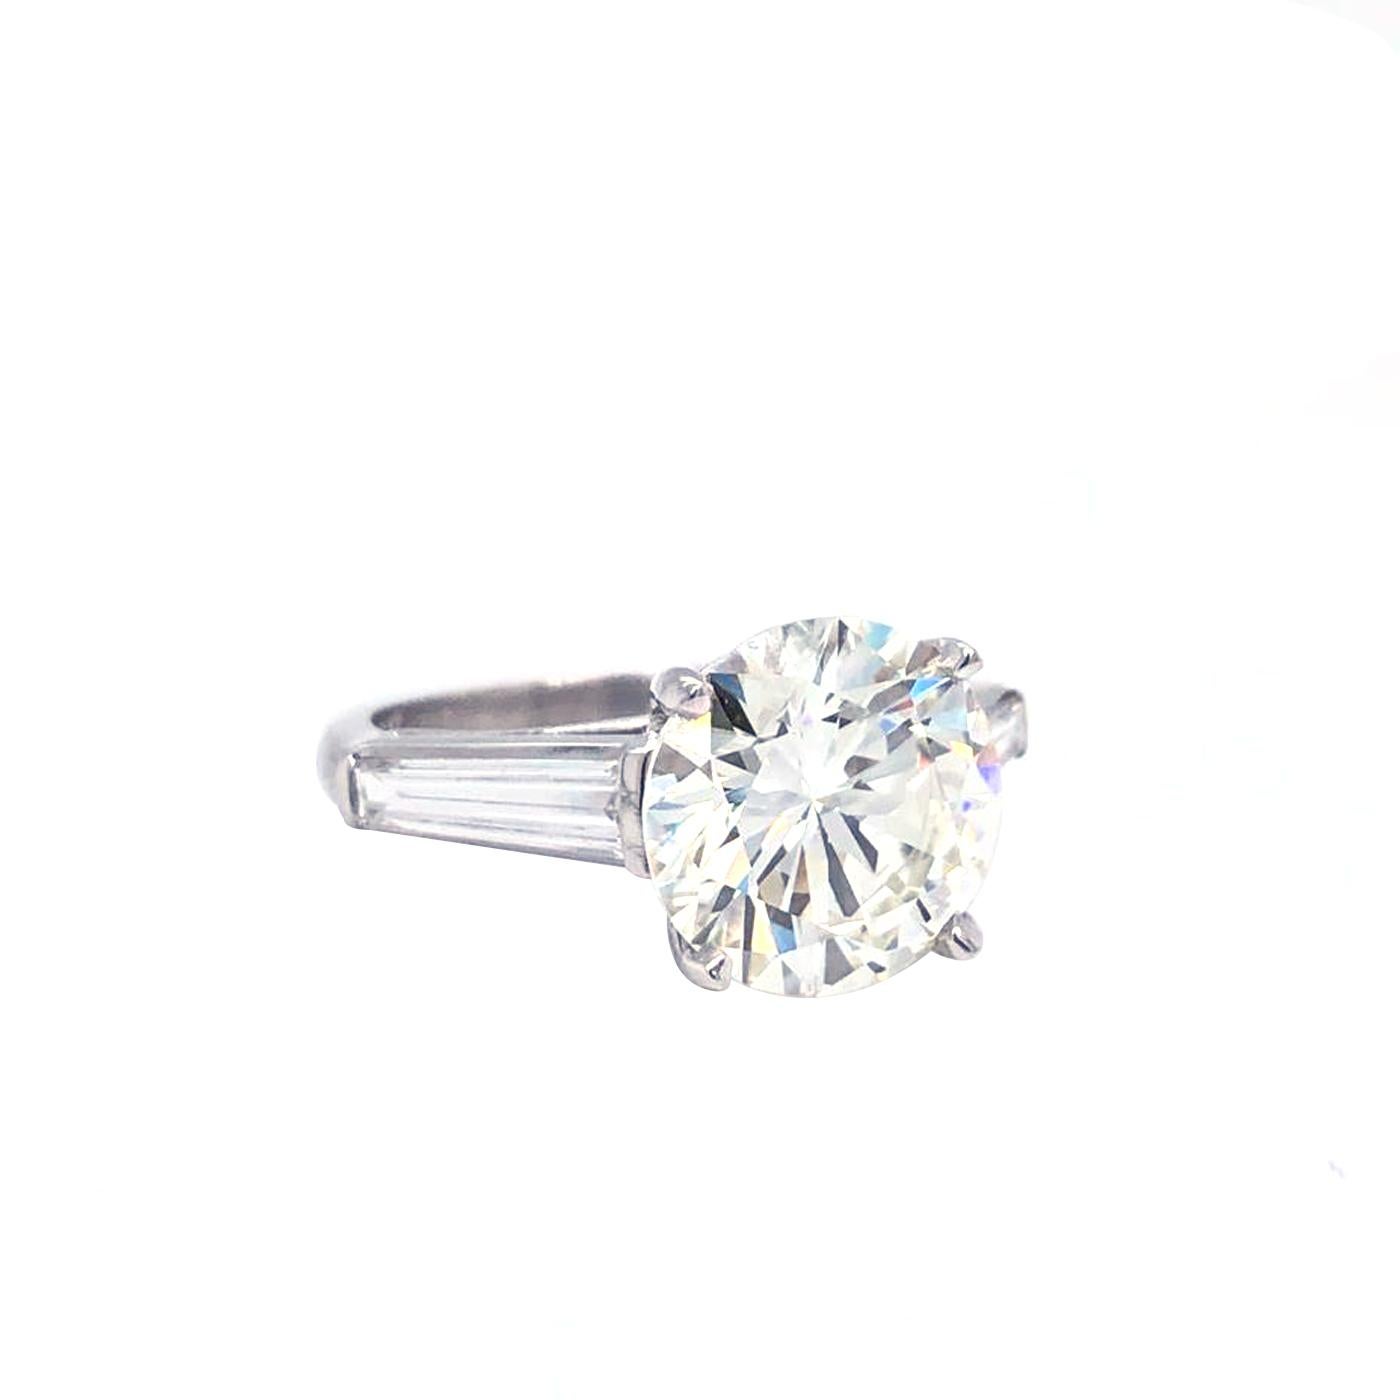 Round Cut 4.03 Carat GIA Certified Round Brilliant Cut Diamond Platinum Engagement Ring